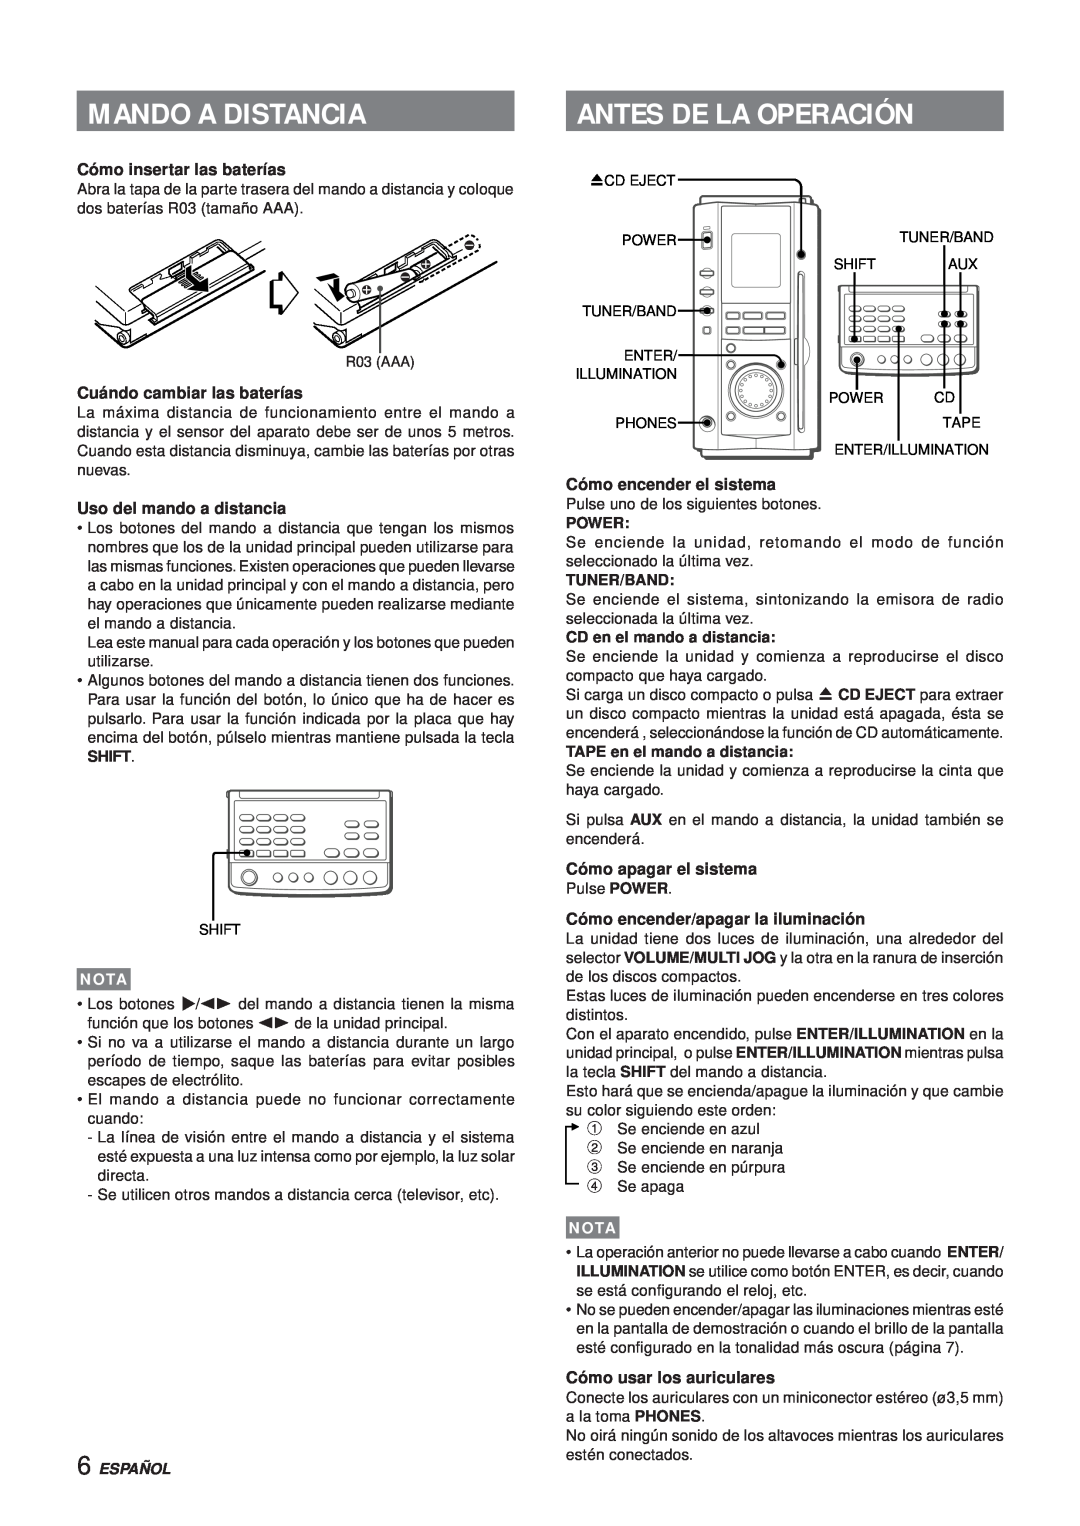 Aiwa XR-MS3 Mando A Distancia, Antes De La Operación, Cómo insertar las baterías, Cuándo cambiar las baterías, Español 